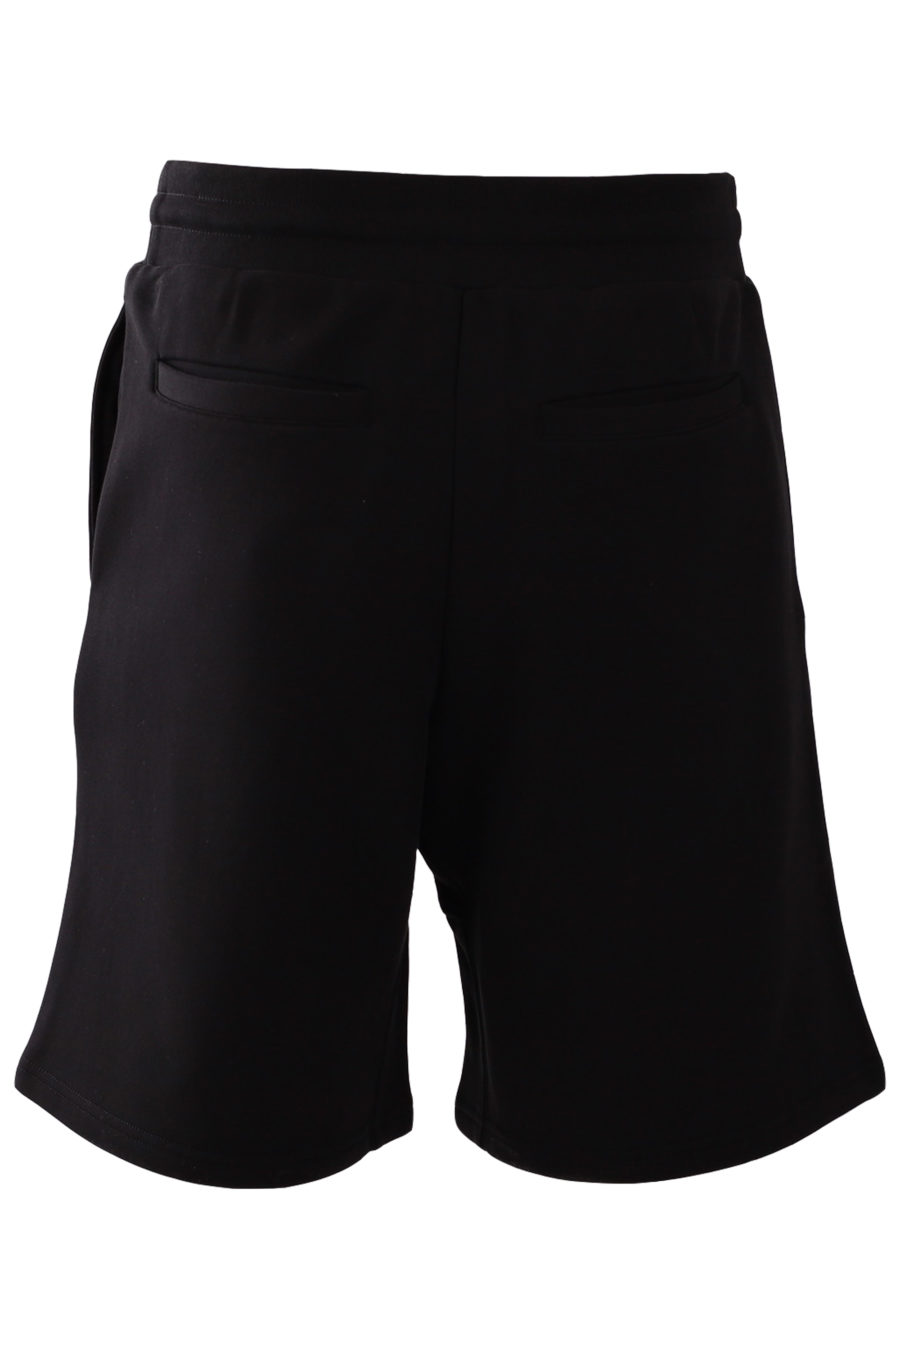 Pantalón corto negro con logo doble pregunta - 45270fe1701164d952f8d685627fa4690d1340fd